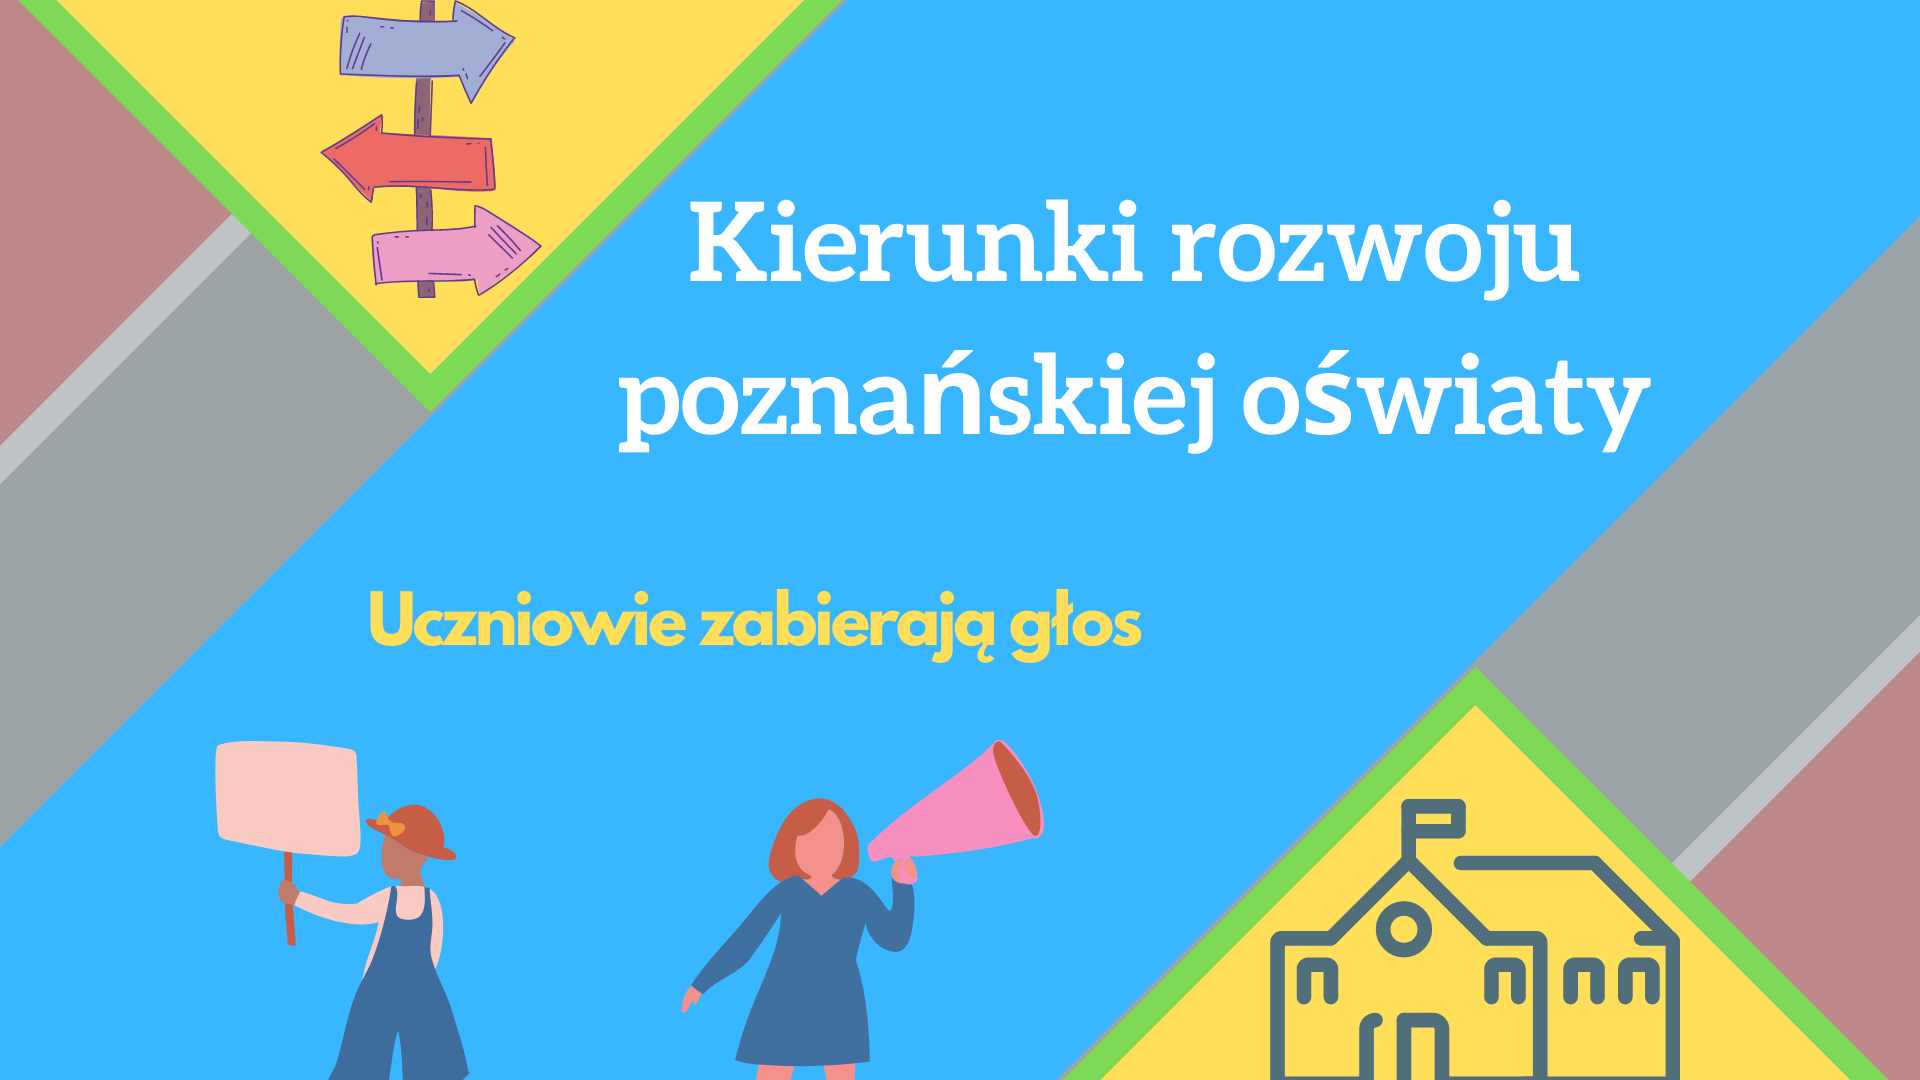 Grafika przedstawia napis "Kierunki rozwoju poznańskiej oświaty - uczniowie zabierają głos", a także rysunek strzałek będących kierunkowskazem, budynku szkoły oraz dwóch osób - jedną z megafonem, drugą z transparentem. - grafika artykułu